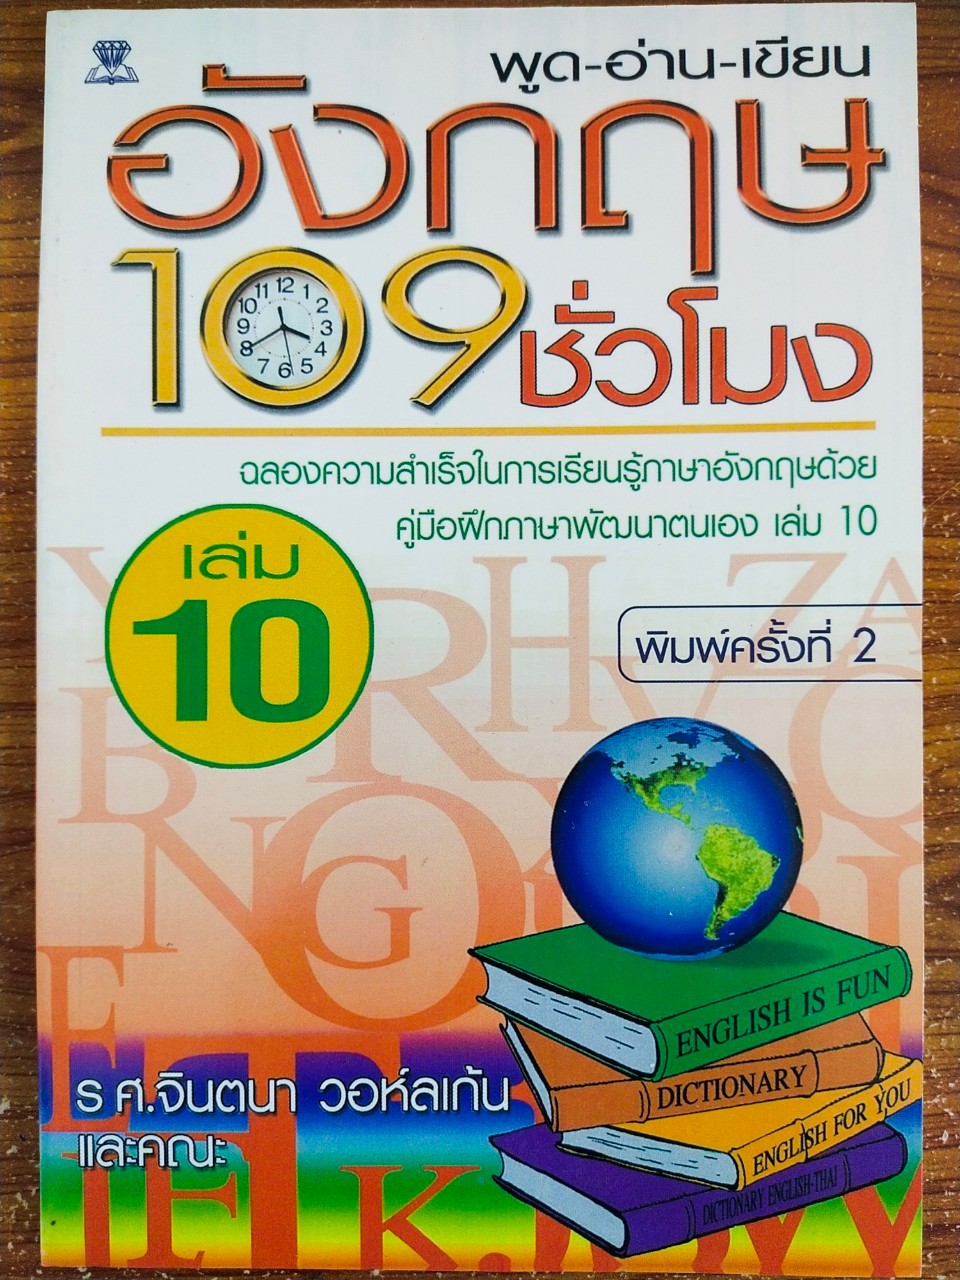 หนังสือ คู่มือเรียนภาษาอังกฤษ ชุด พูด อ่าน เขียน เรียนภาษาอังกฤษ 109  ชั่วโมง (1 ชุด 10 เล่ม) - Tonklapravit - Thaipick